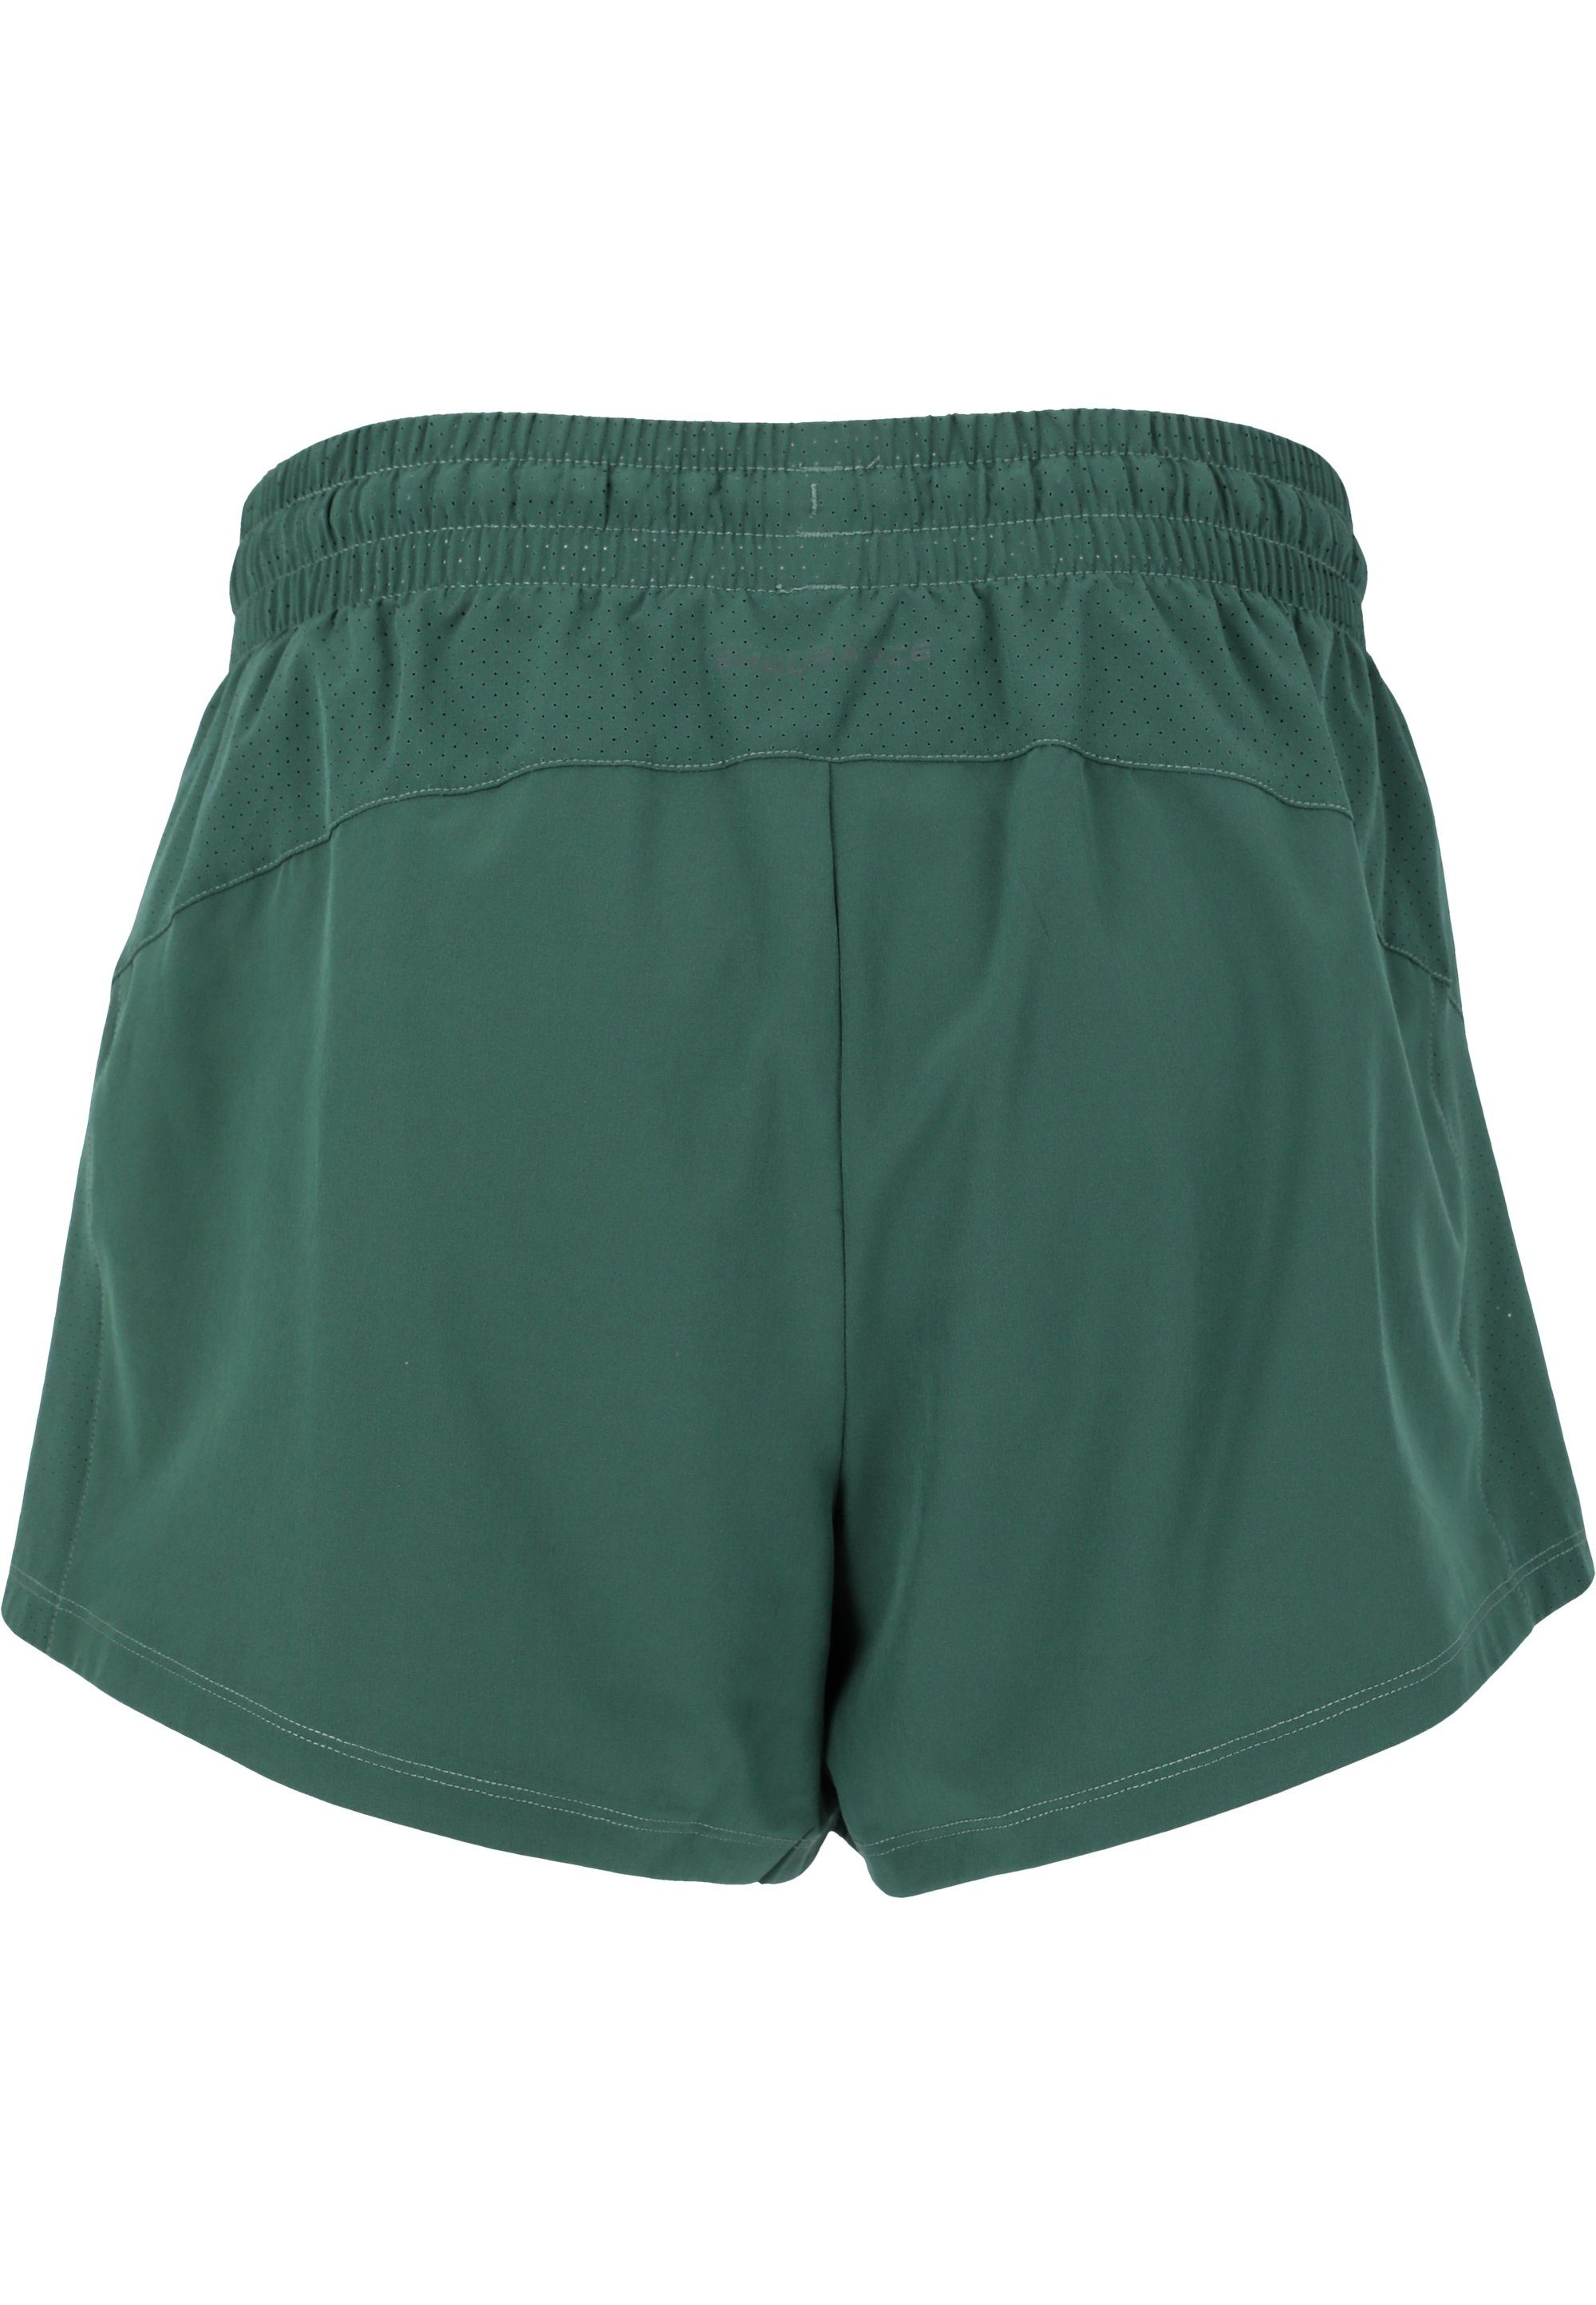 ENDURANCE Shorts praktischen grün mit Taschen Eslaire